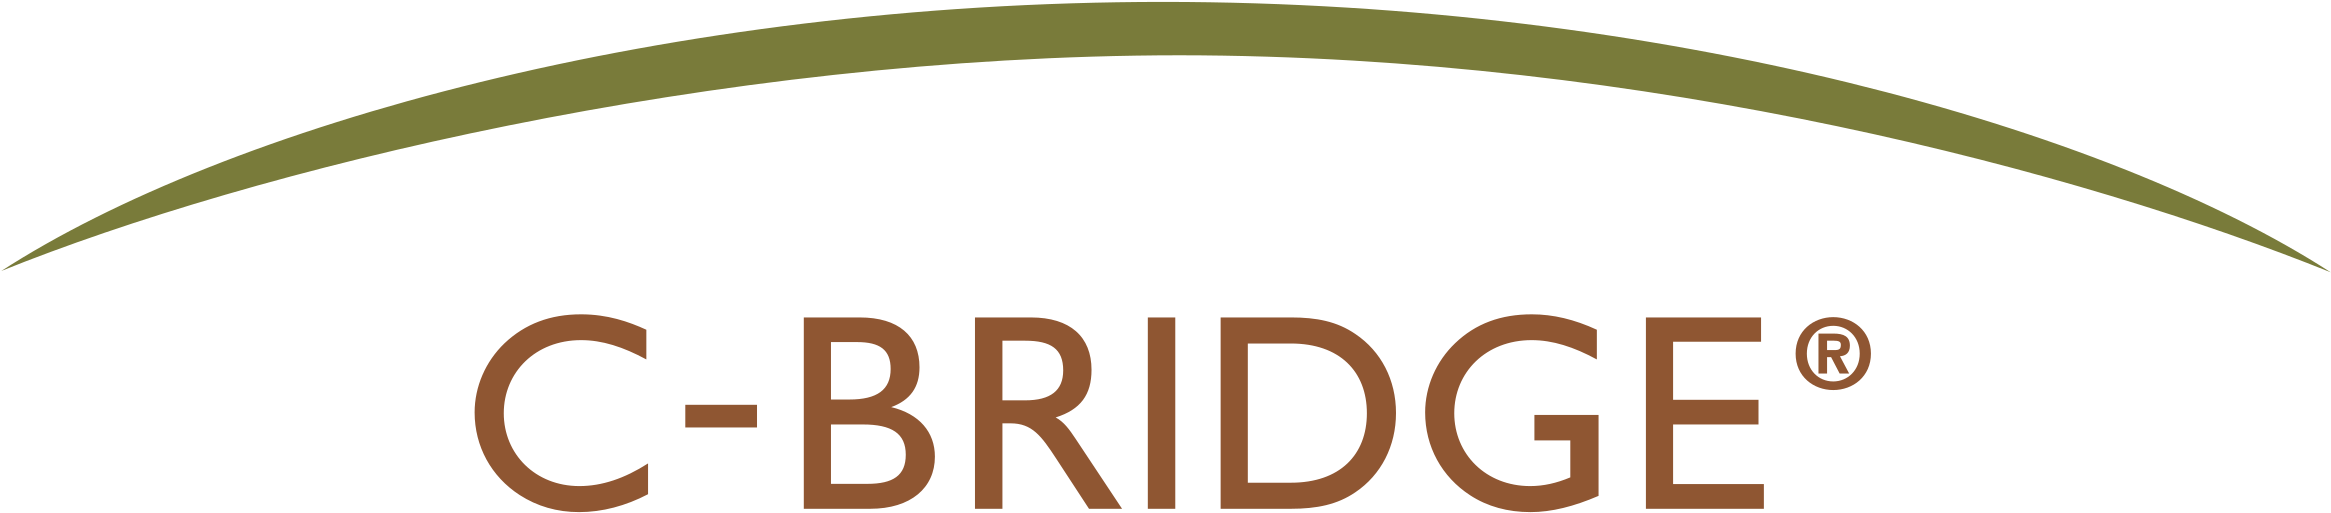 C Bridge Logo Png Transparent - Bridge Clipart (2400x2400), Png Download